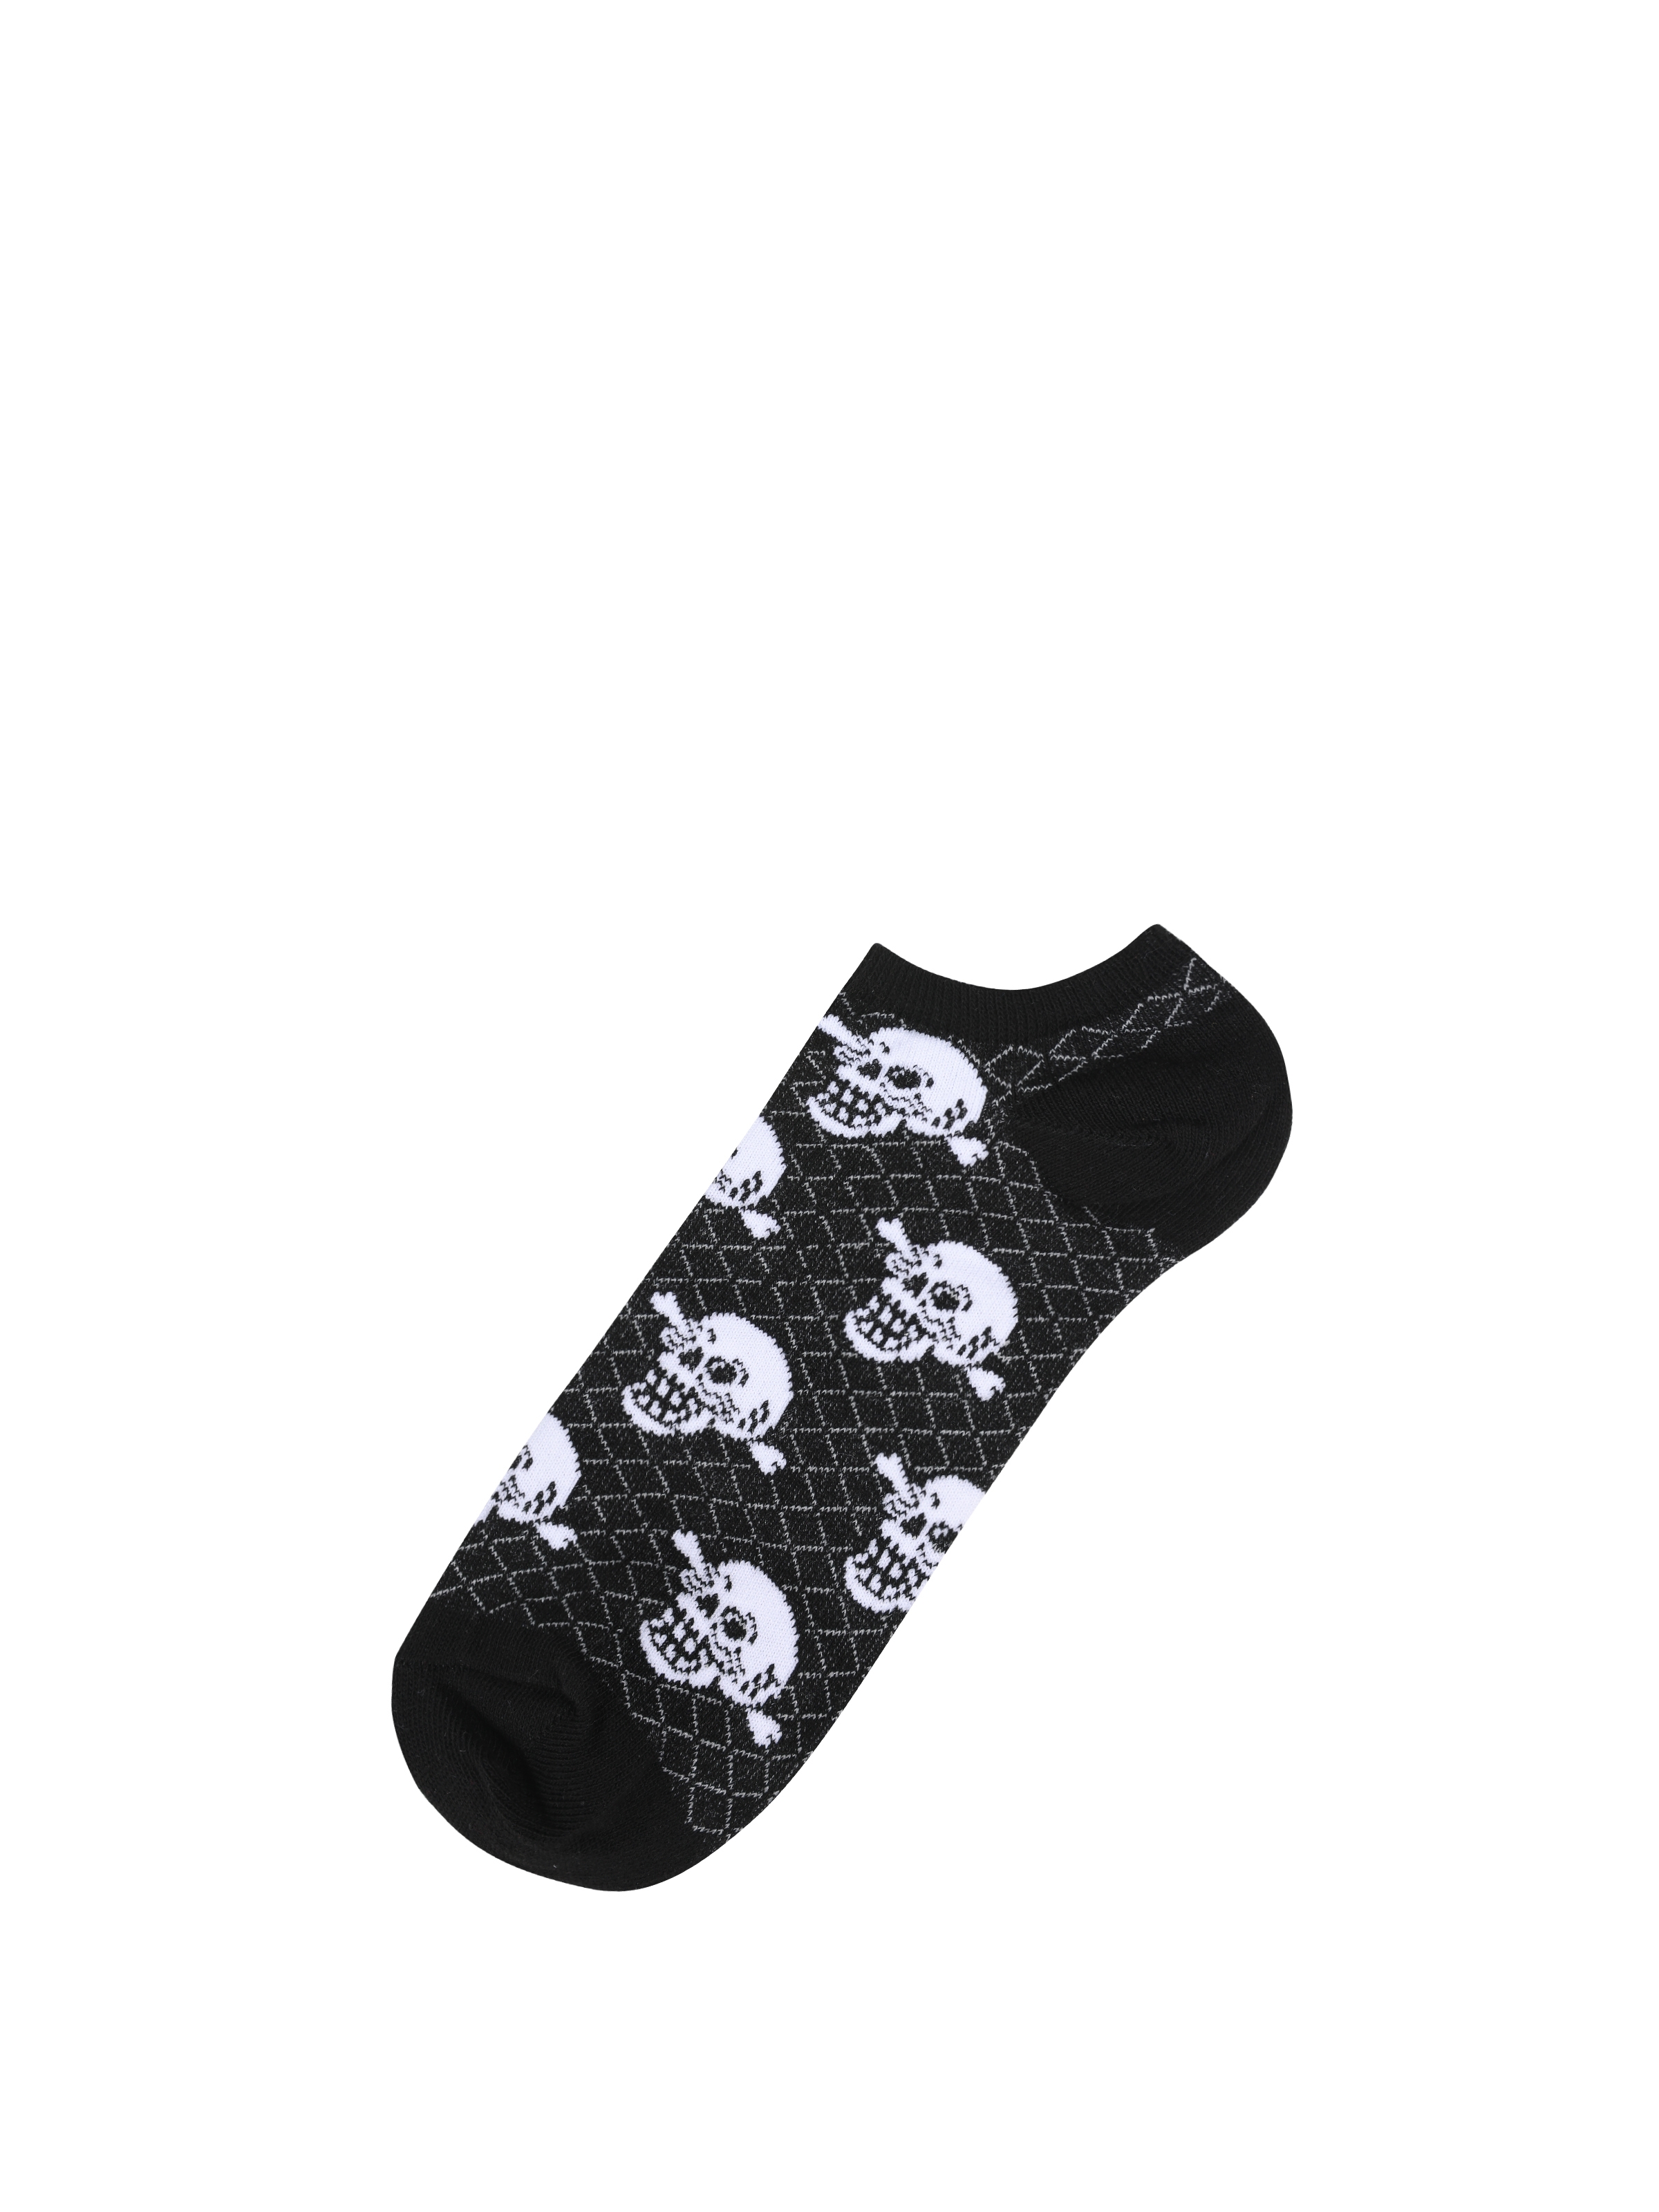 Baskılı Siyah Erkek Çorap Cl1062994